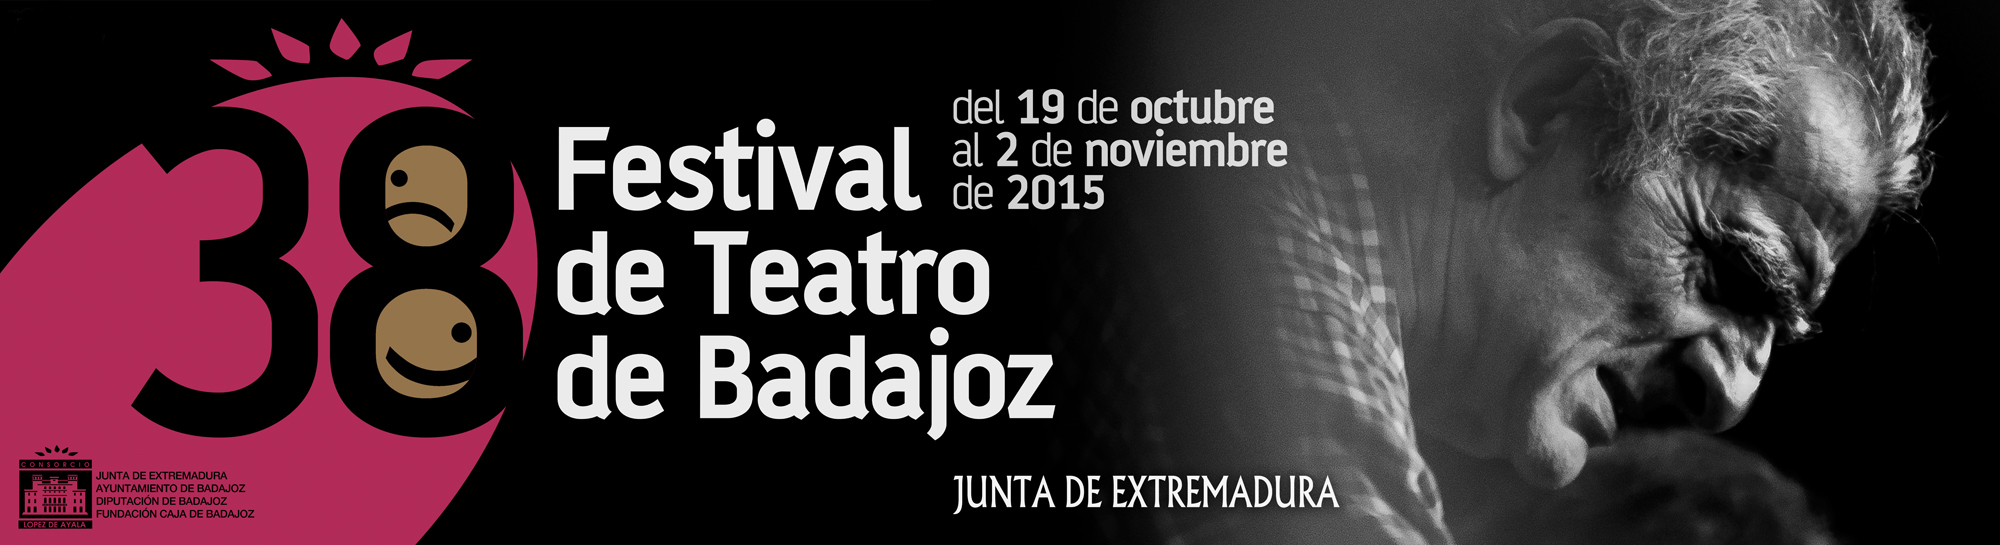 cartel-38festival-teatro-culturabadajoz